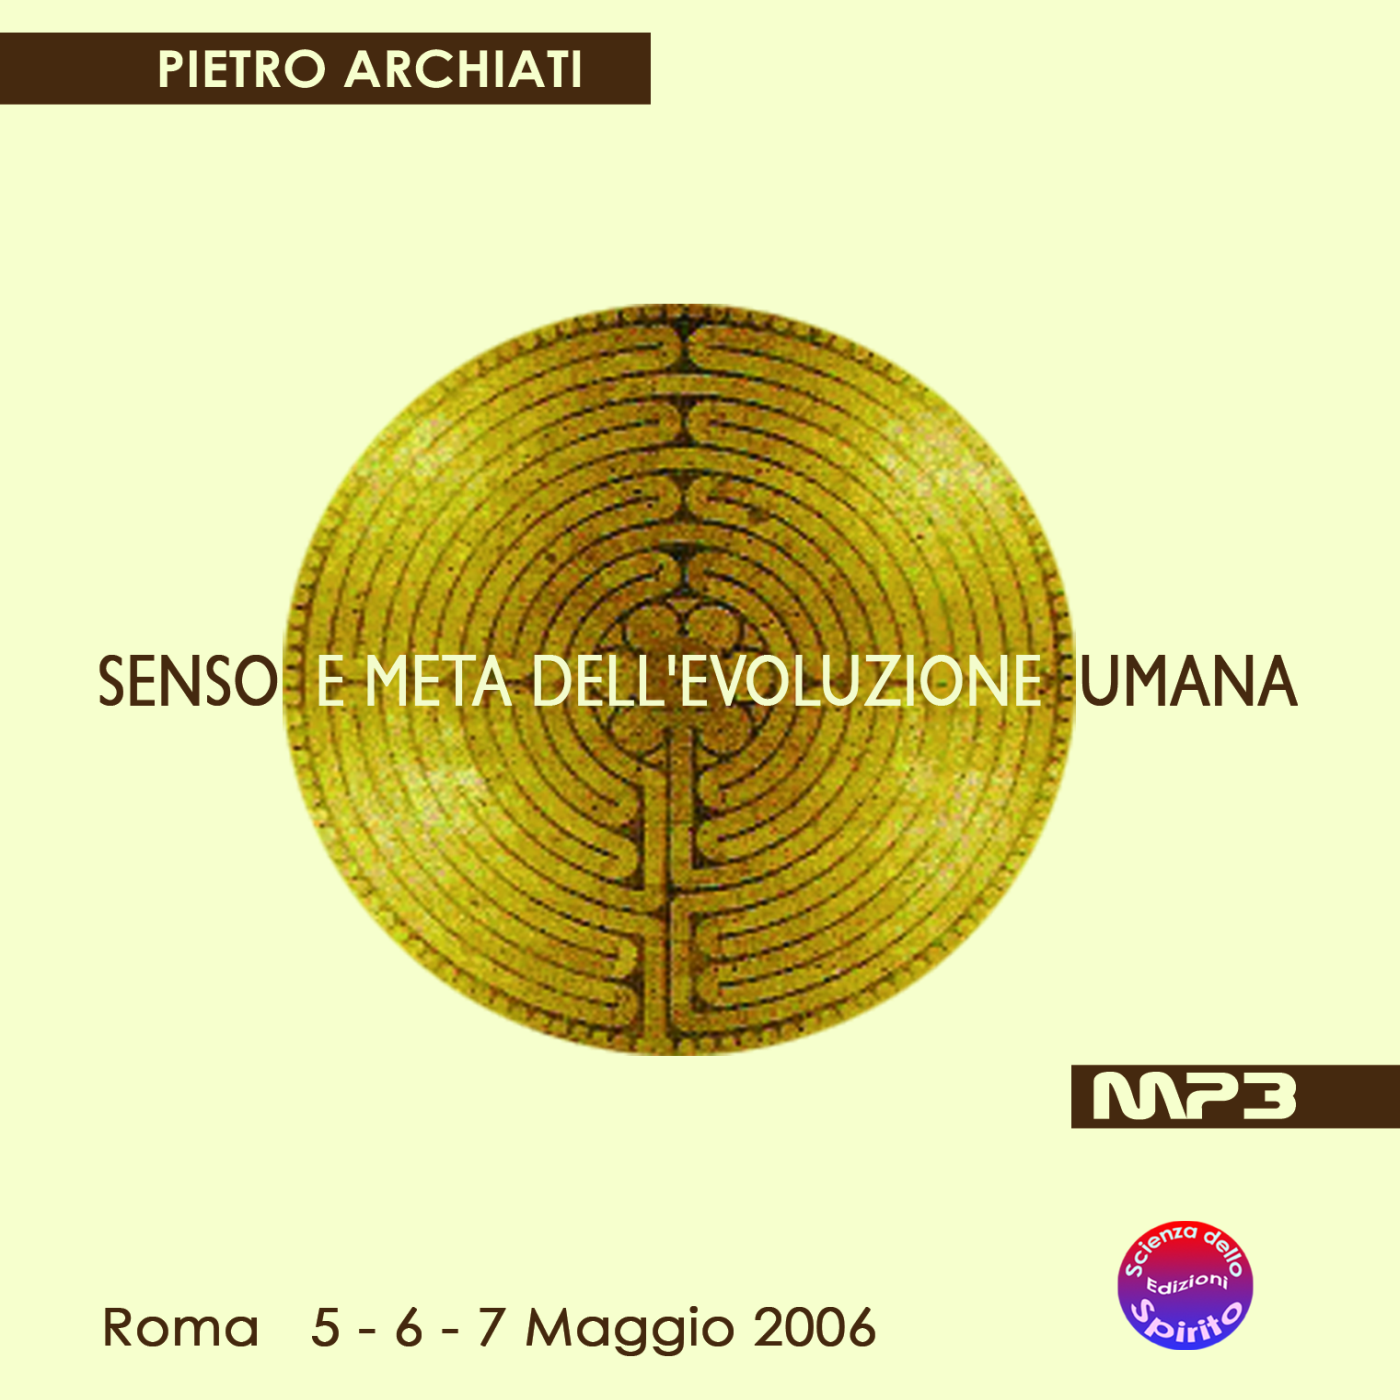 SENSO E META DELL'EVOLUZIONE UMANA - Convegno di Scienza dello spirito - Roma, dal 5 al 7 maggio 2006